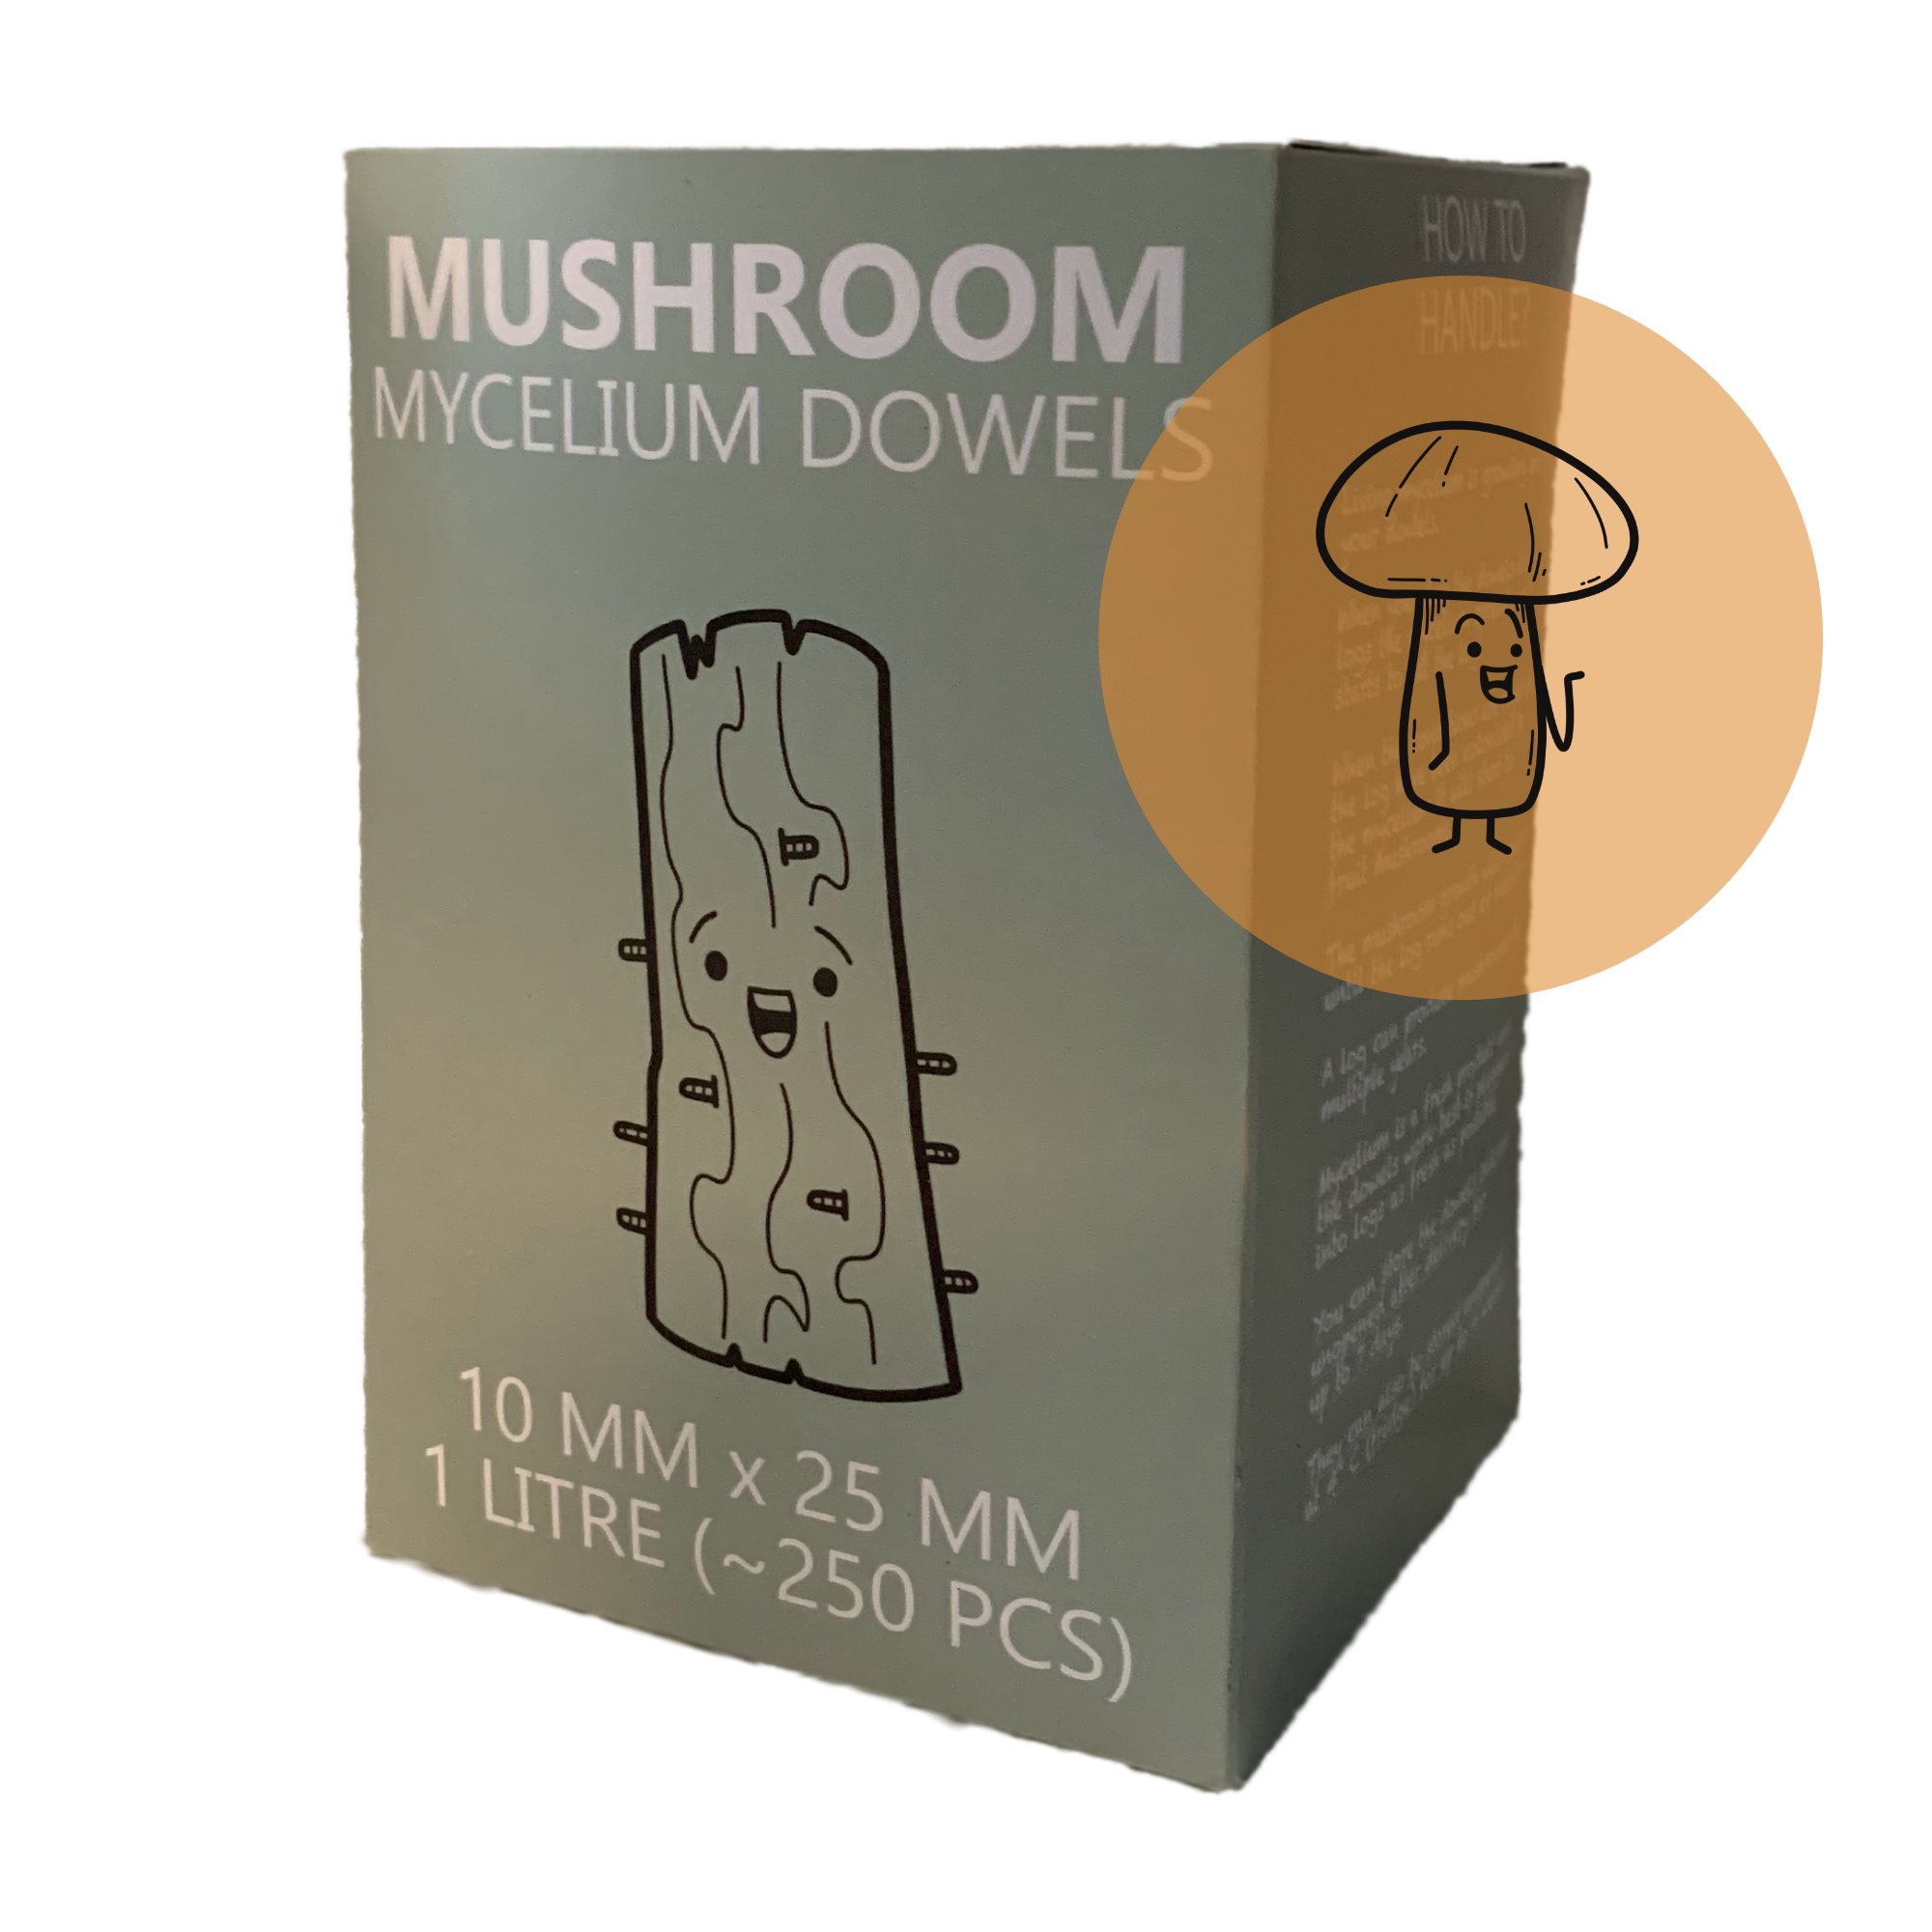 Shiitake mushroom dowels